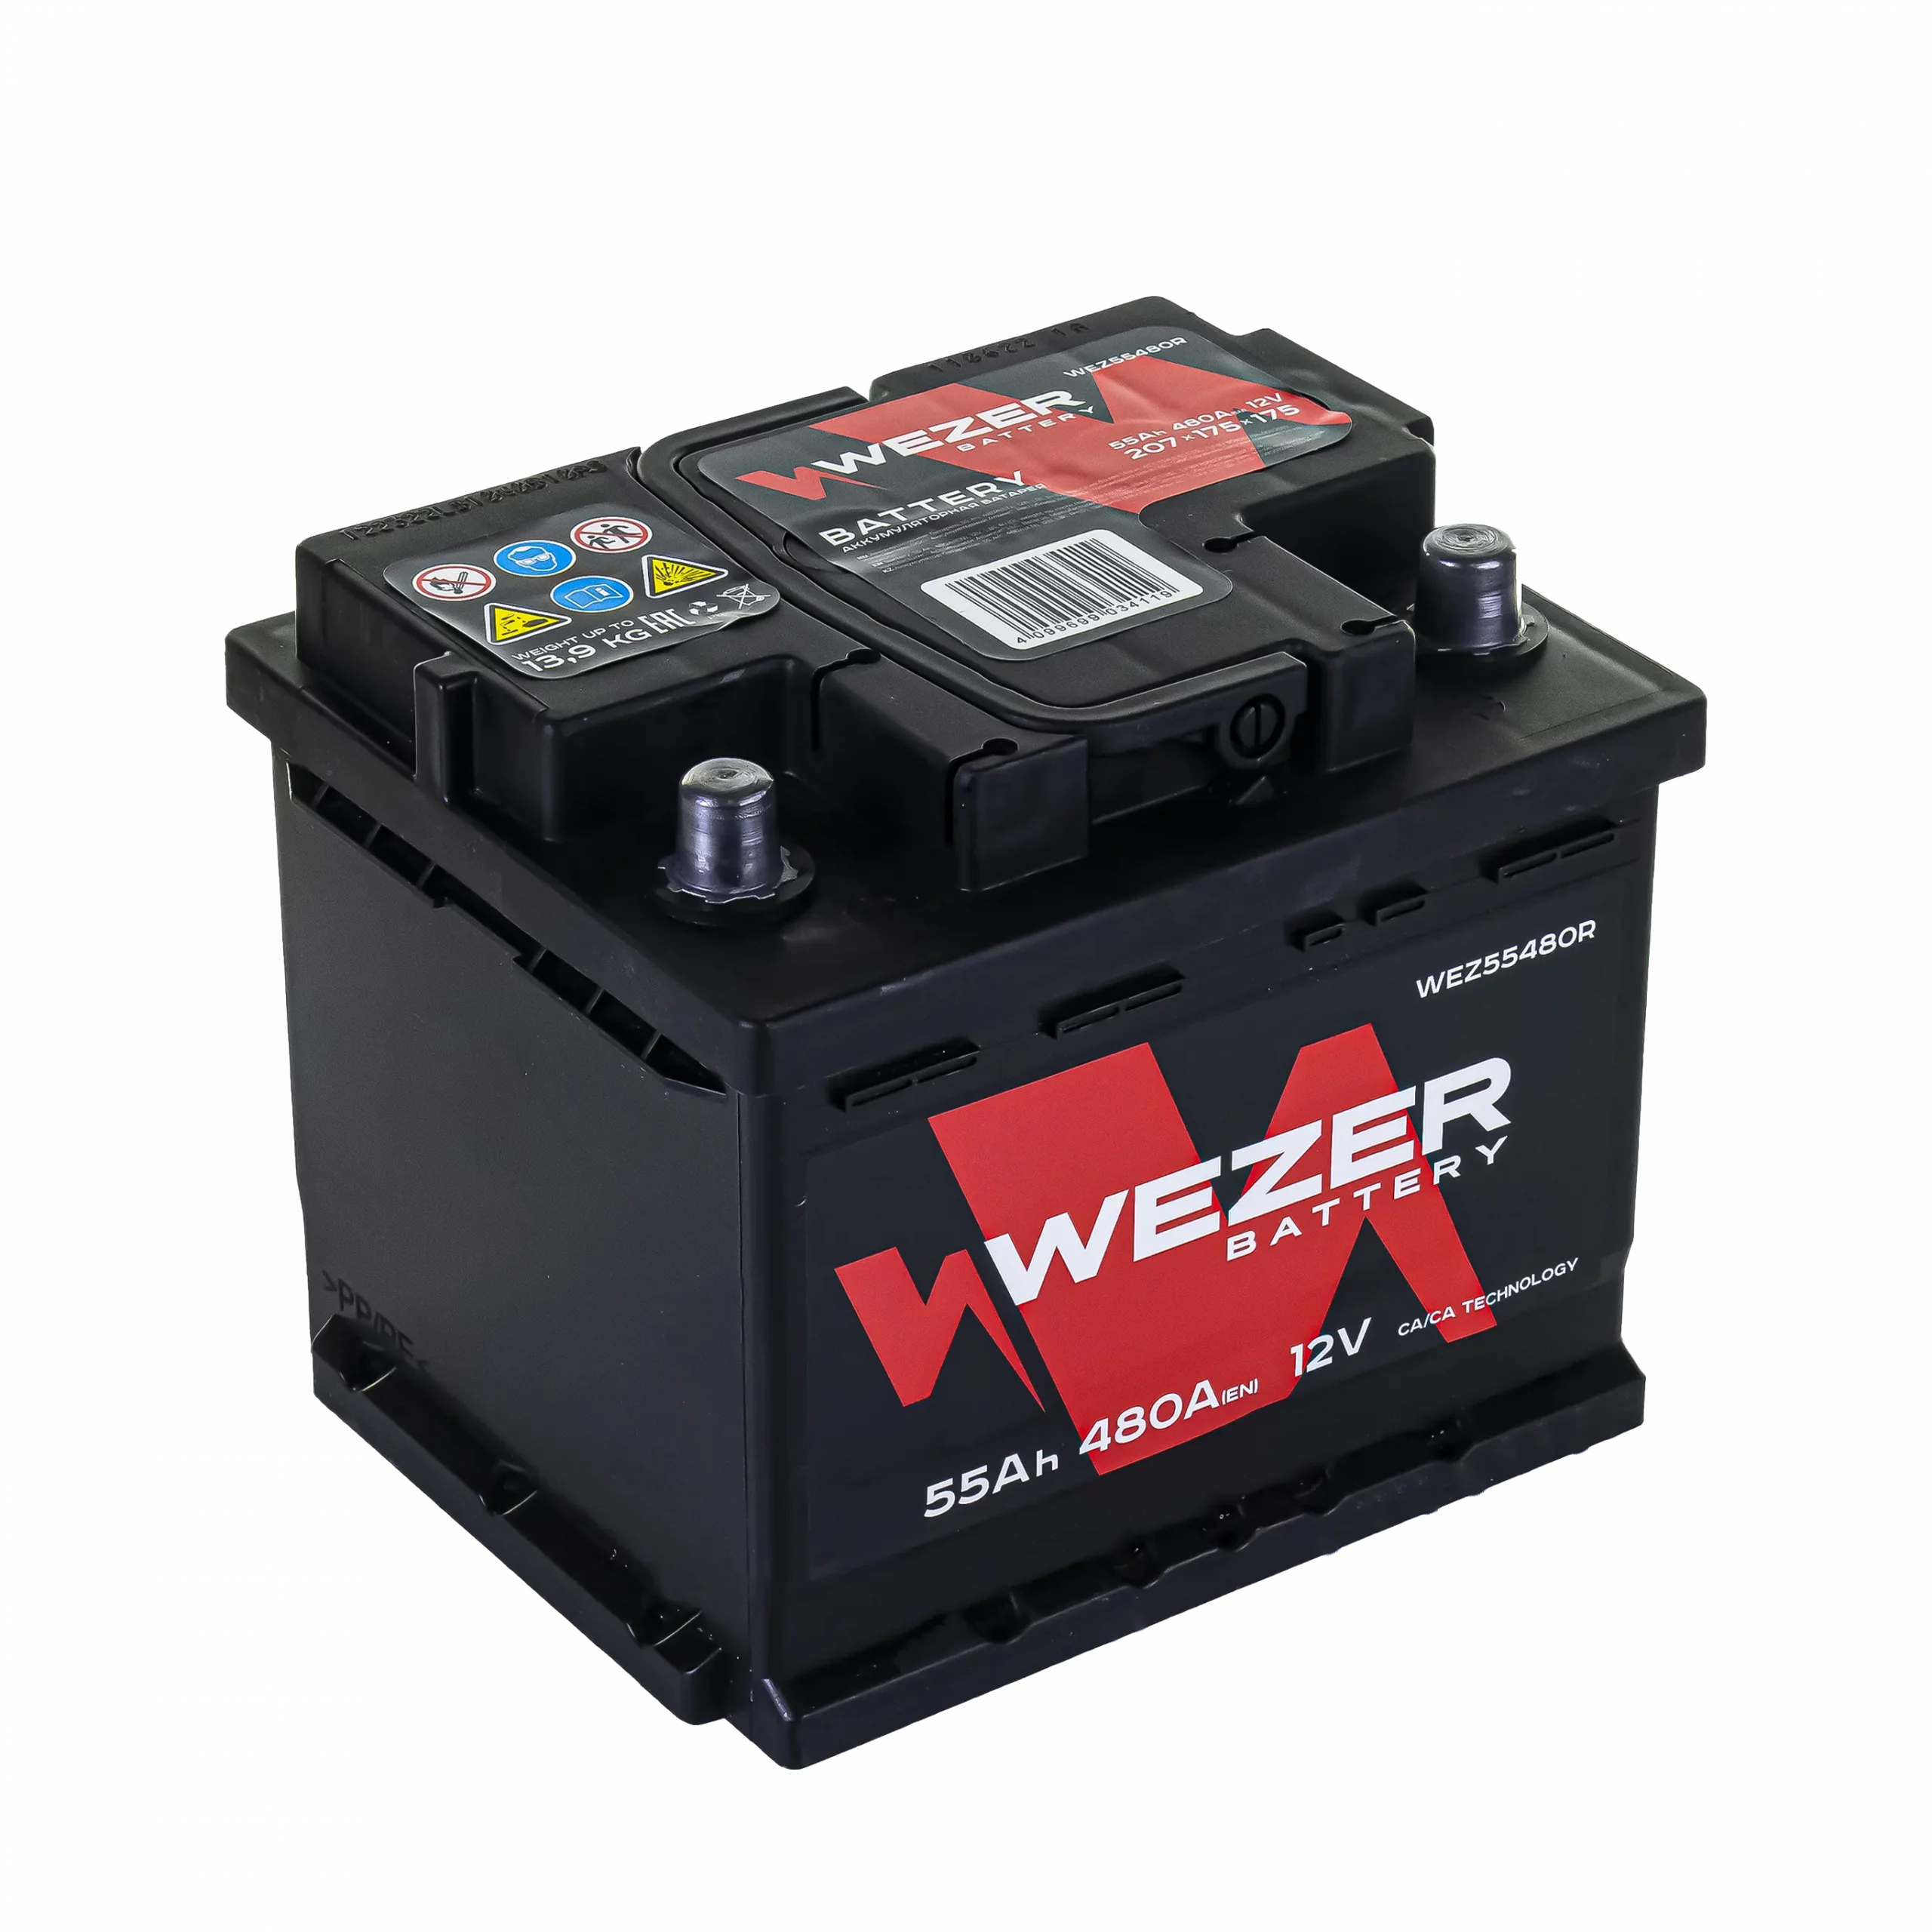 WEZER Batterie 55Ah 480A (R)